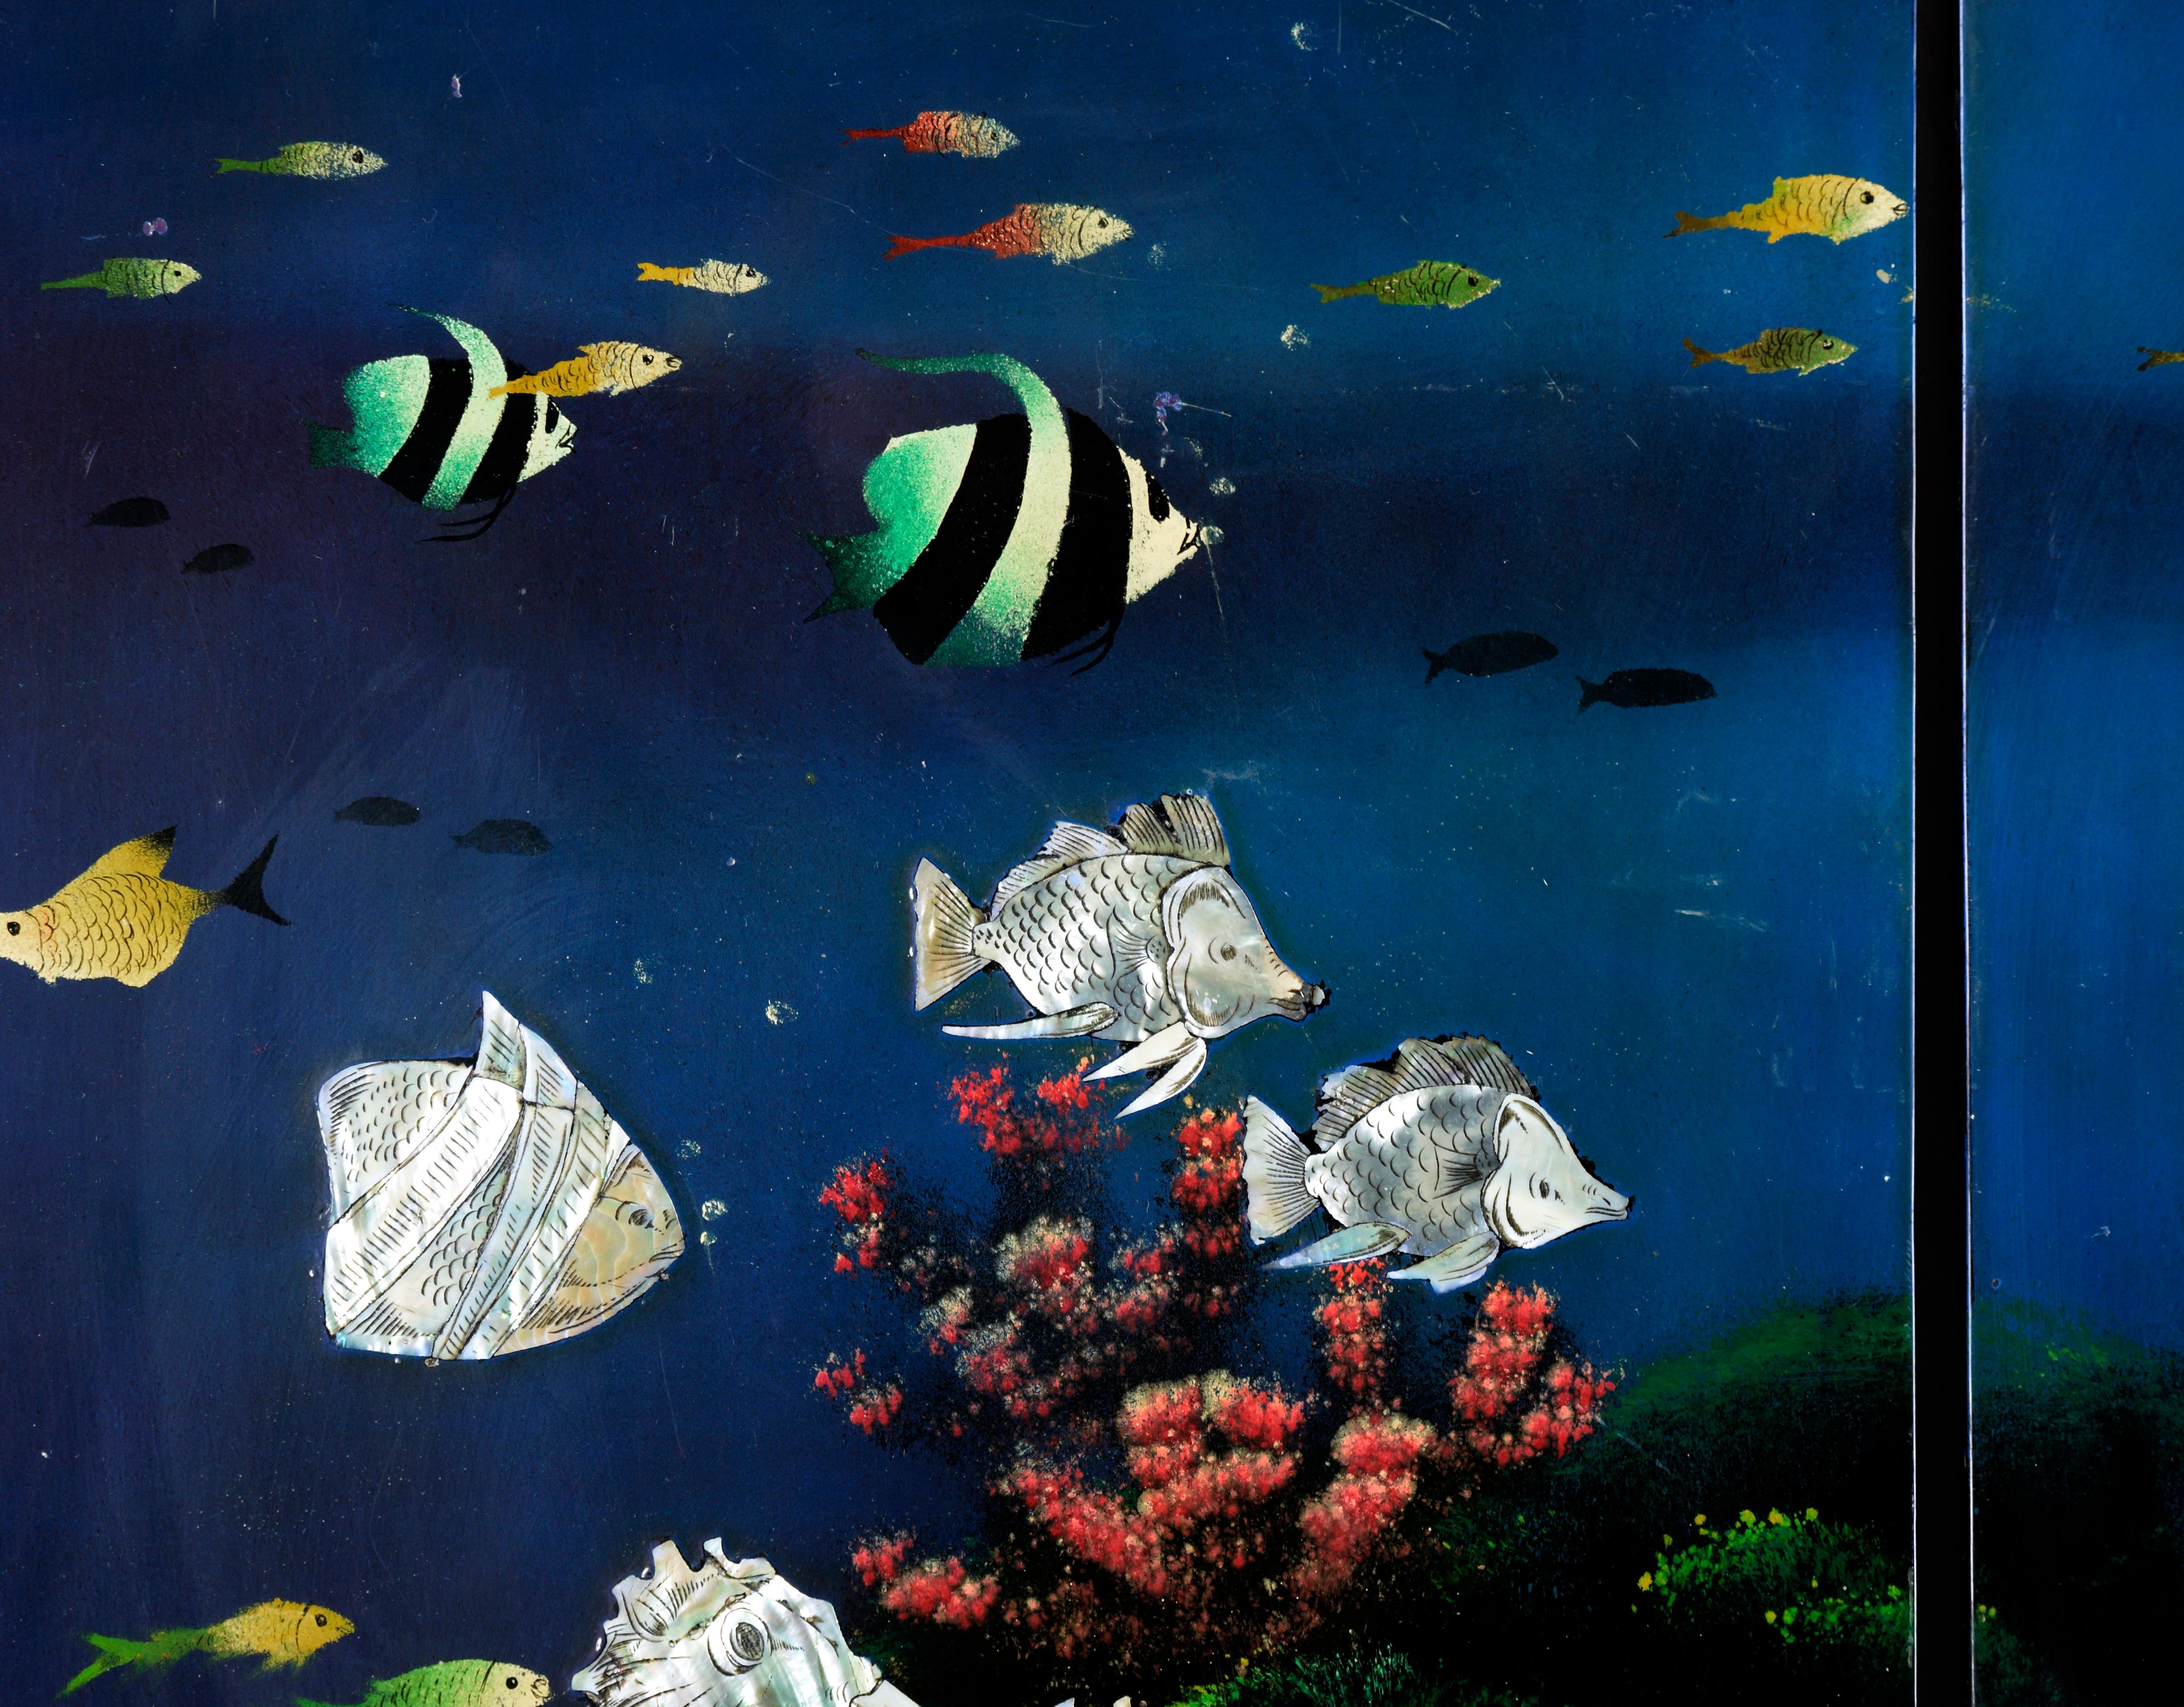 Tropische Unterwasserszene mit Perlmutt-Intarsien auf Holzplatte, vier Tafeln

Aufwändige Szene mit vier Tafeln von einem unbekannten Künstler. Wasser, Korallen und einige tropische Fische wurden auf die Tafeln gemalt. Auf jeder Tafel sind mehrere